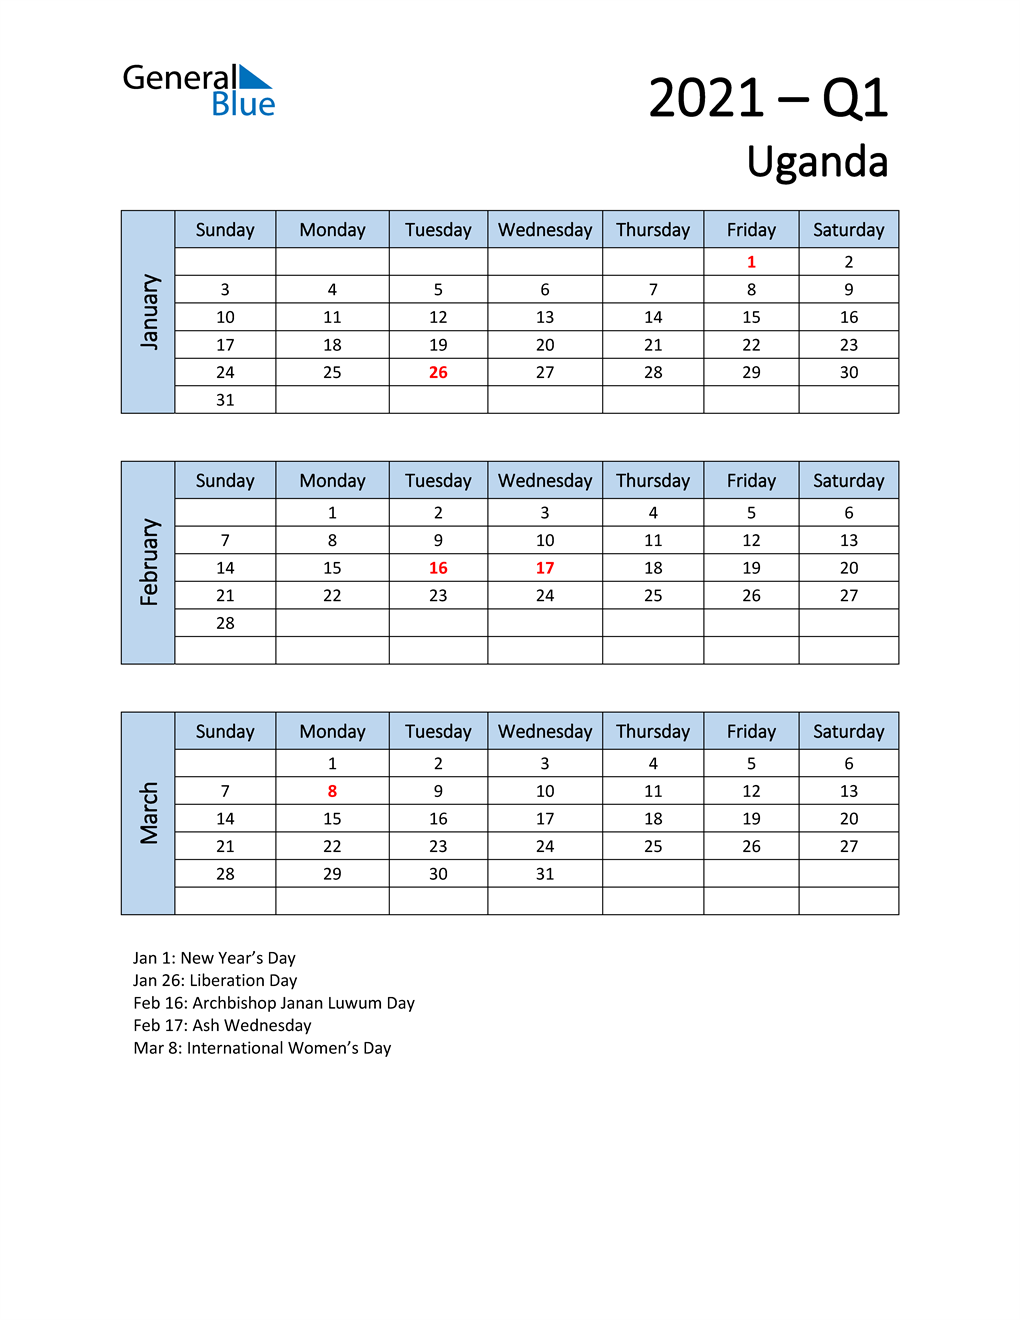  Free Q1 2021 Calendar for Uganda